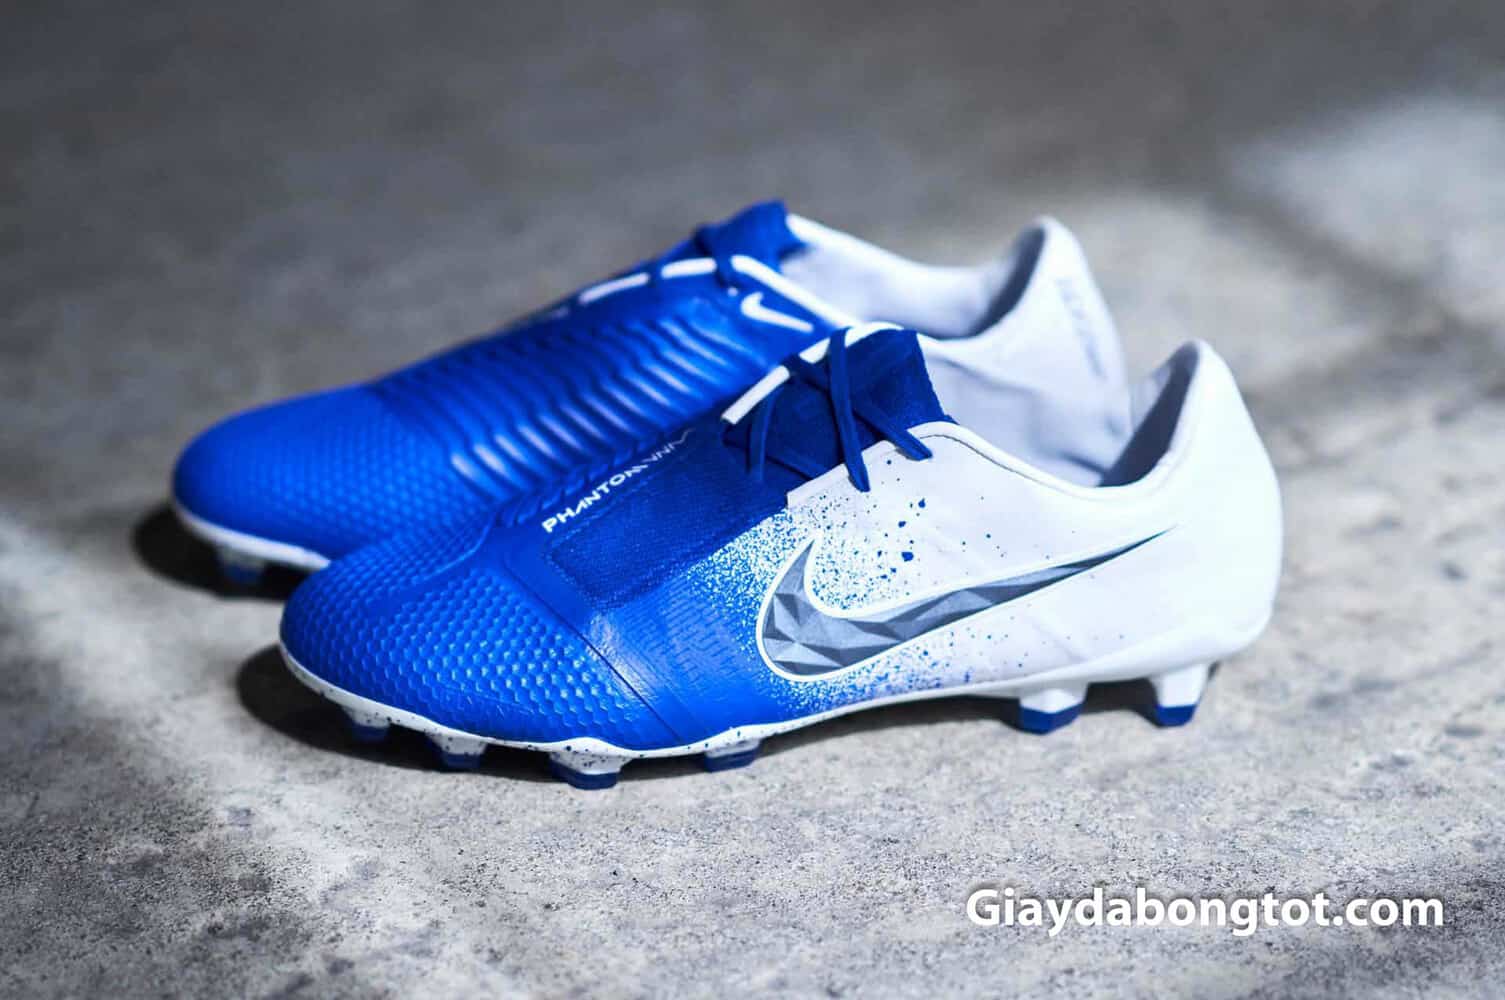 Phối màu xanh dương trắng cực đẹp của giày Nike Phantom VNM "Euphoria Mode"